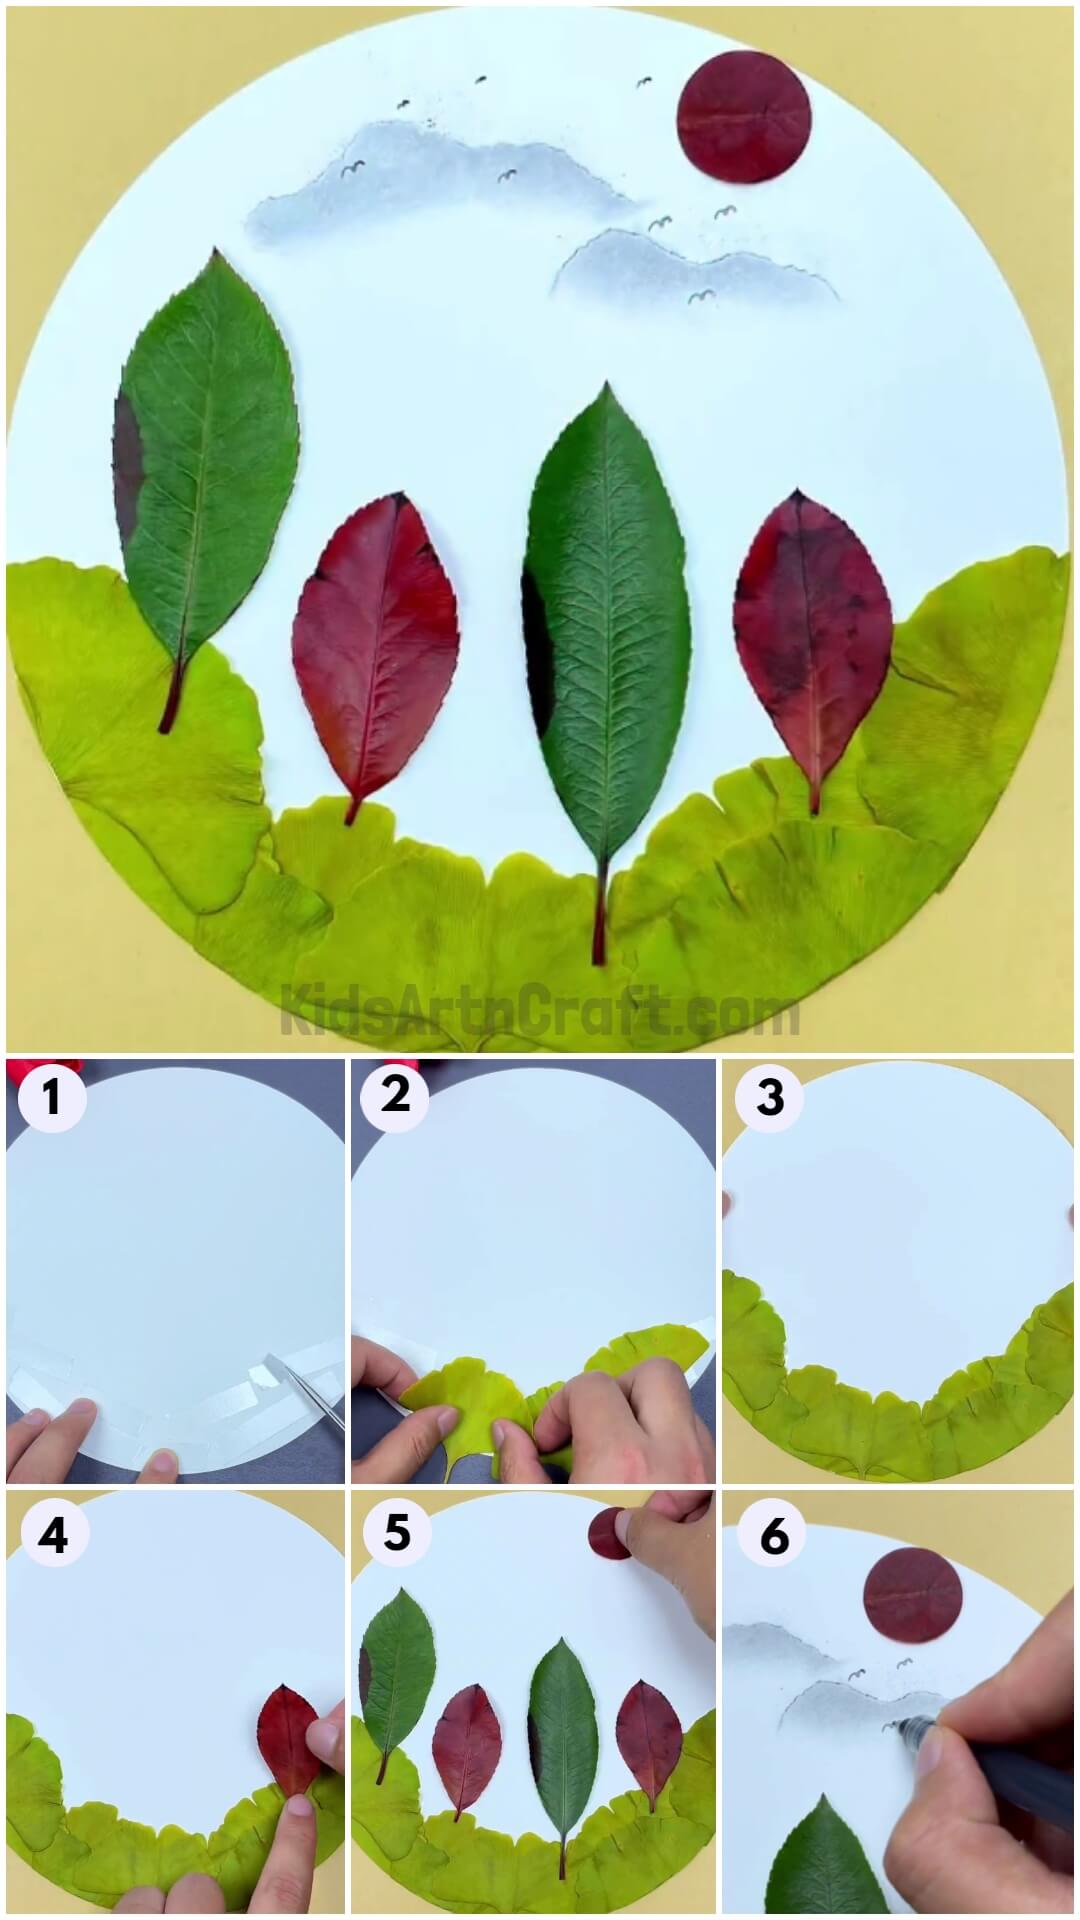 Leaf Landscape Scenery Craft Tutorial For Kids